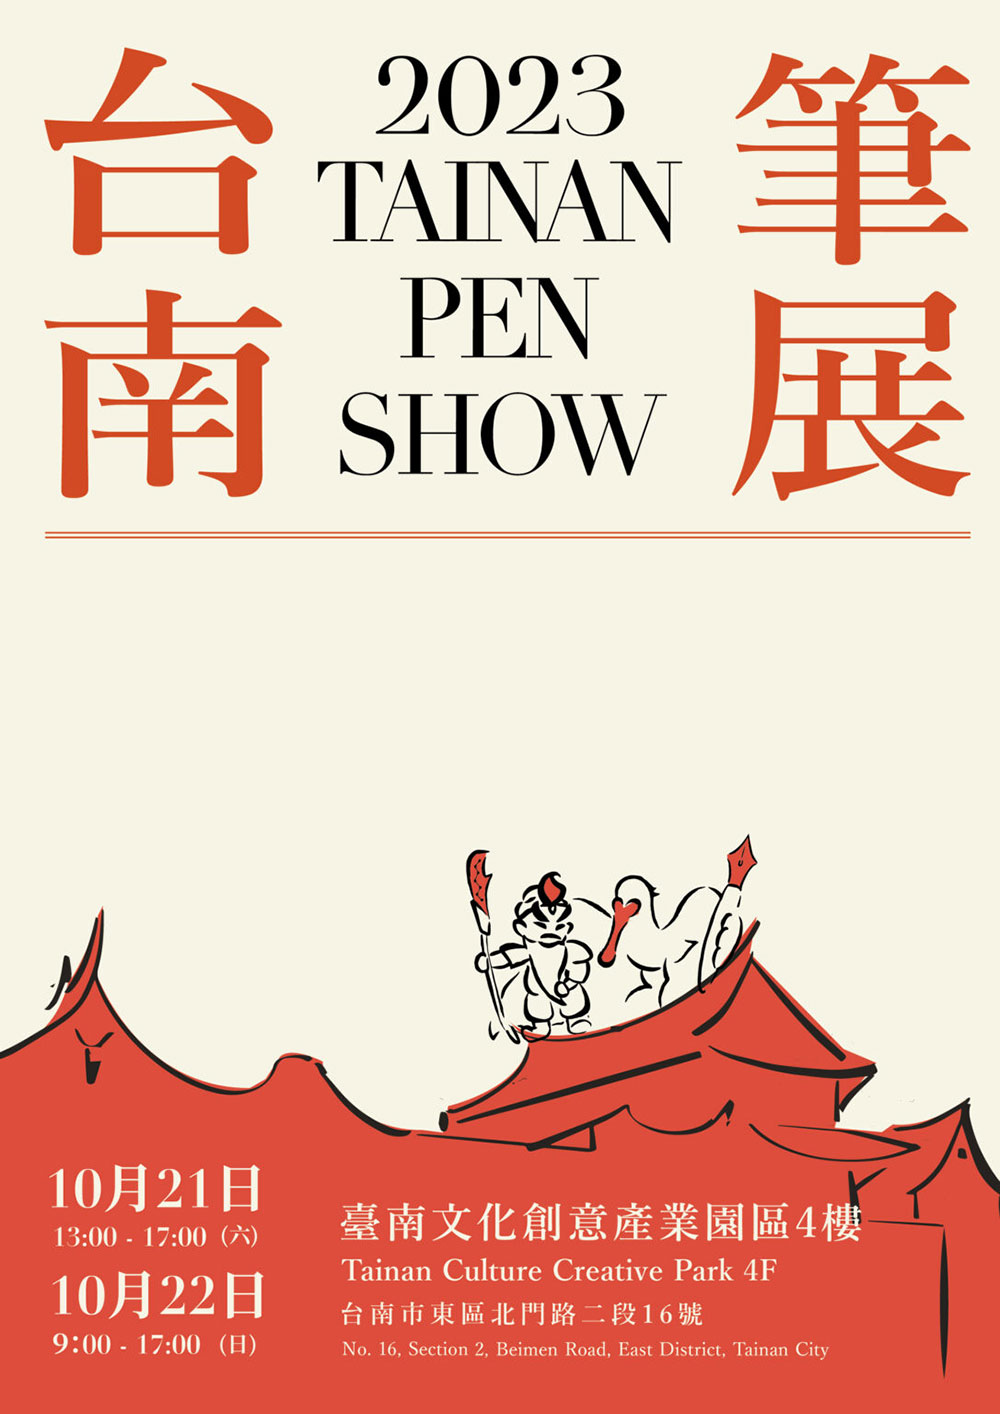 台南筆展tainan pen show2023の広告画像